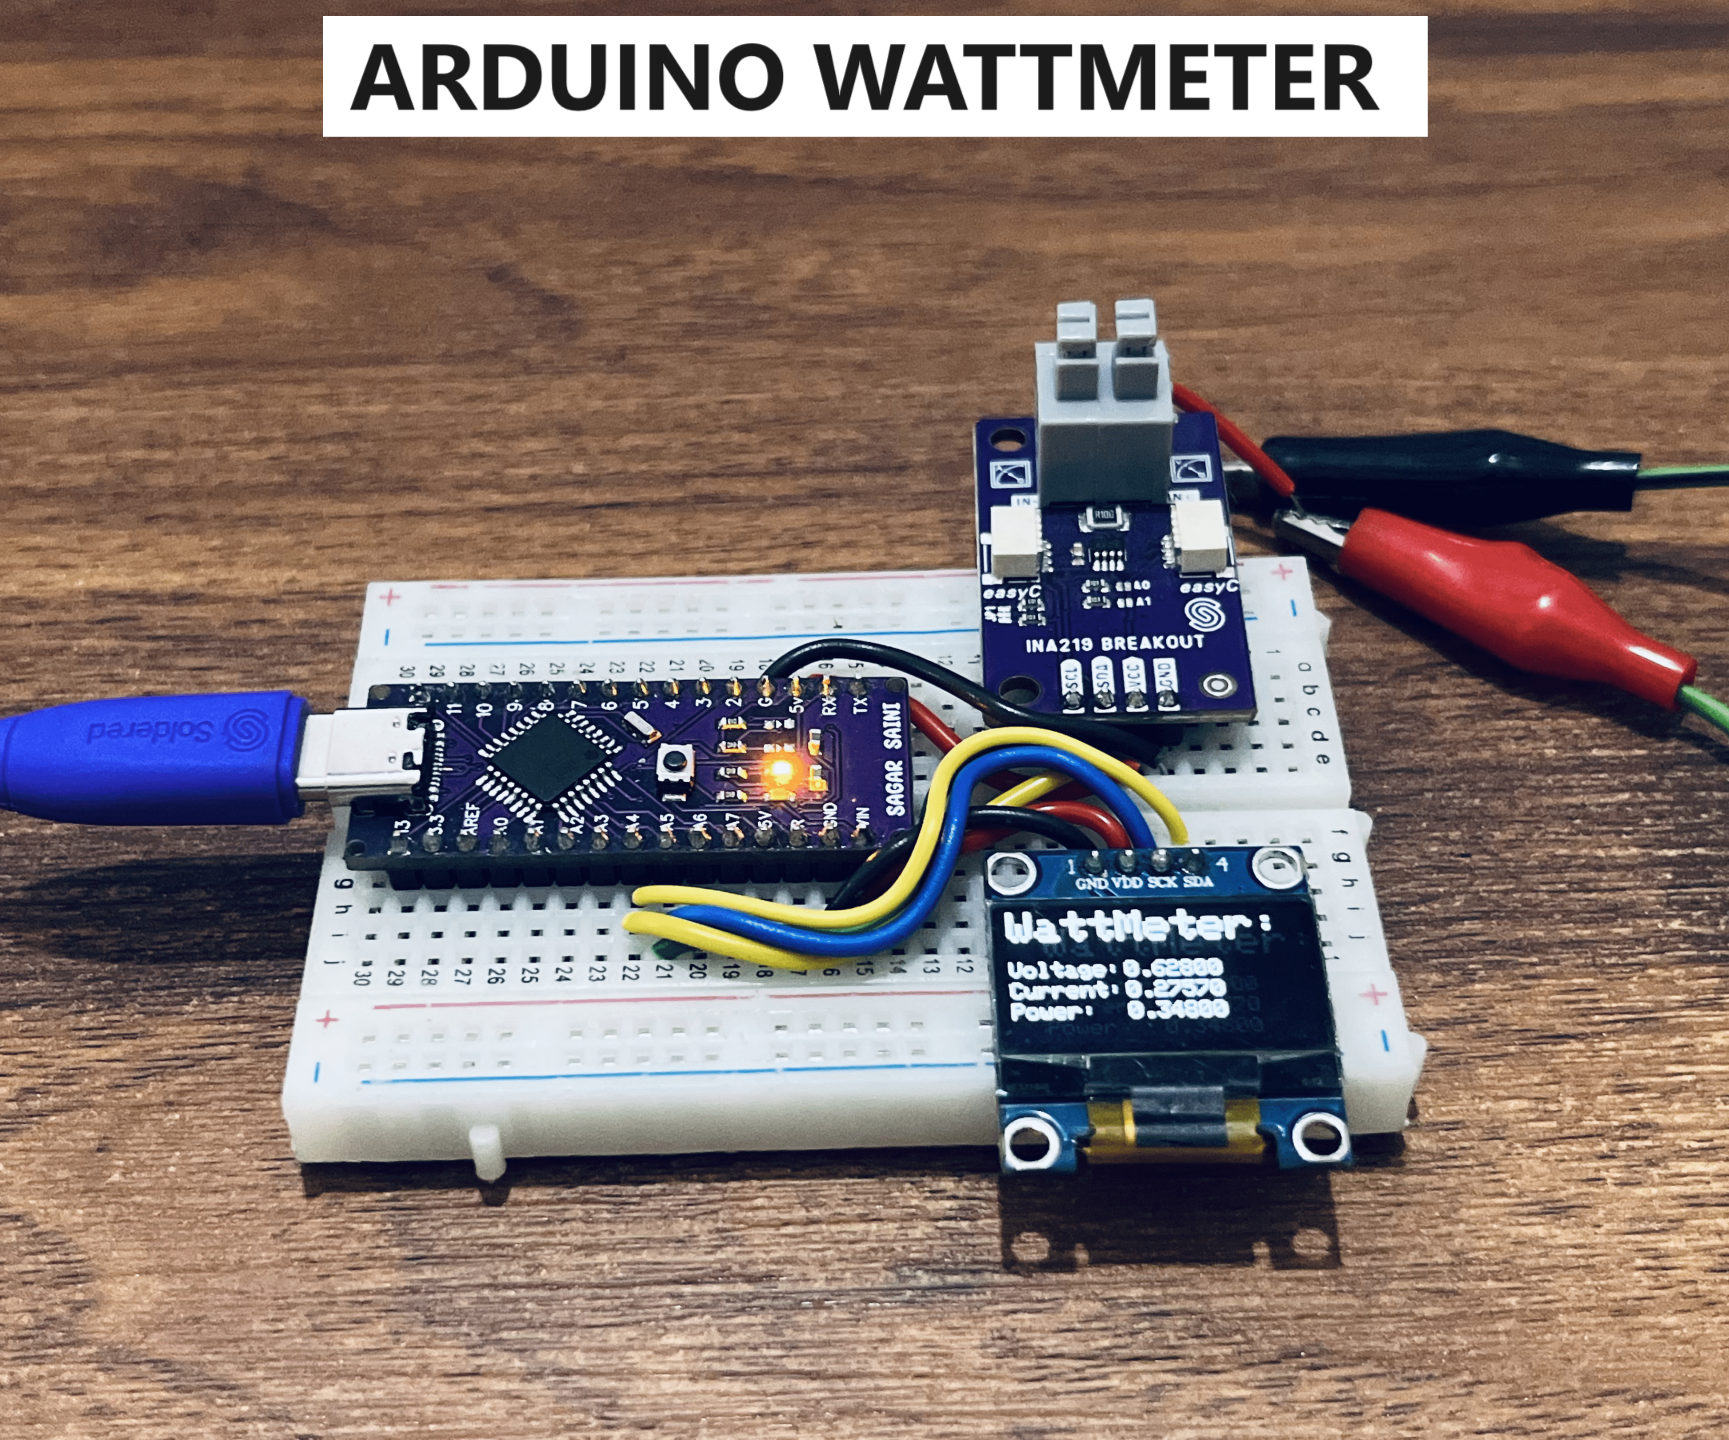 INA219 & Arduino Based Wattmeter